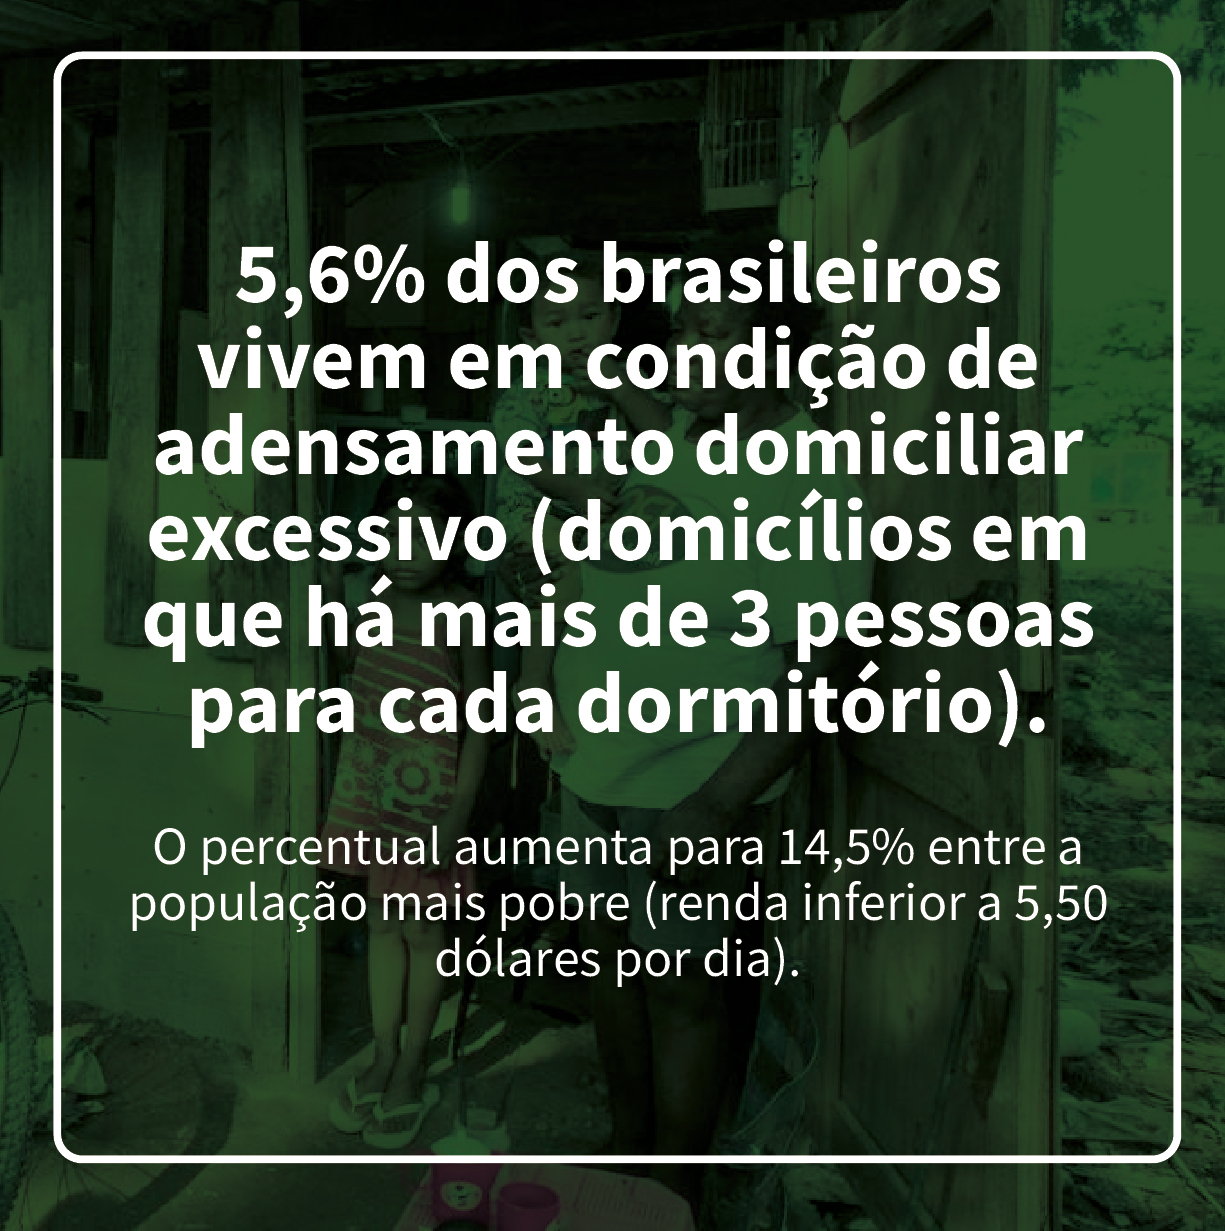 5,6% dos brasileiros vivem em condição de adensamento domiciliar excessivo (domicílios em que há mais de 3 pessoas para cada dormitório).